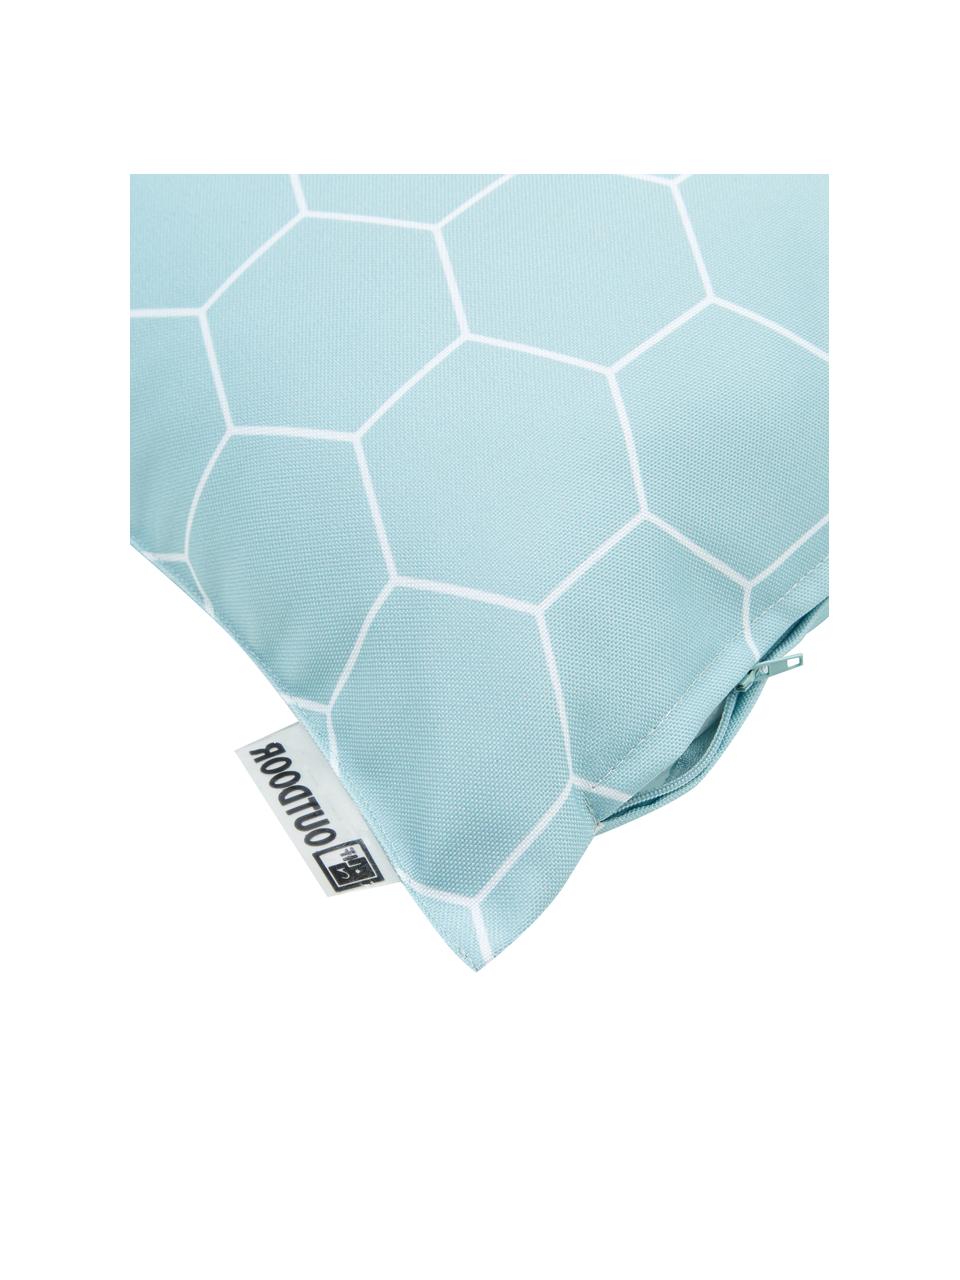 Gemustertes Outdoor-Kissen Honeycomb, 100% Polyester, Blau, Weiß, 47 x 47 cm